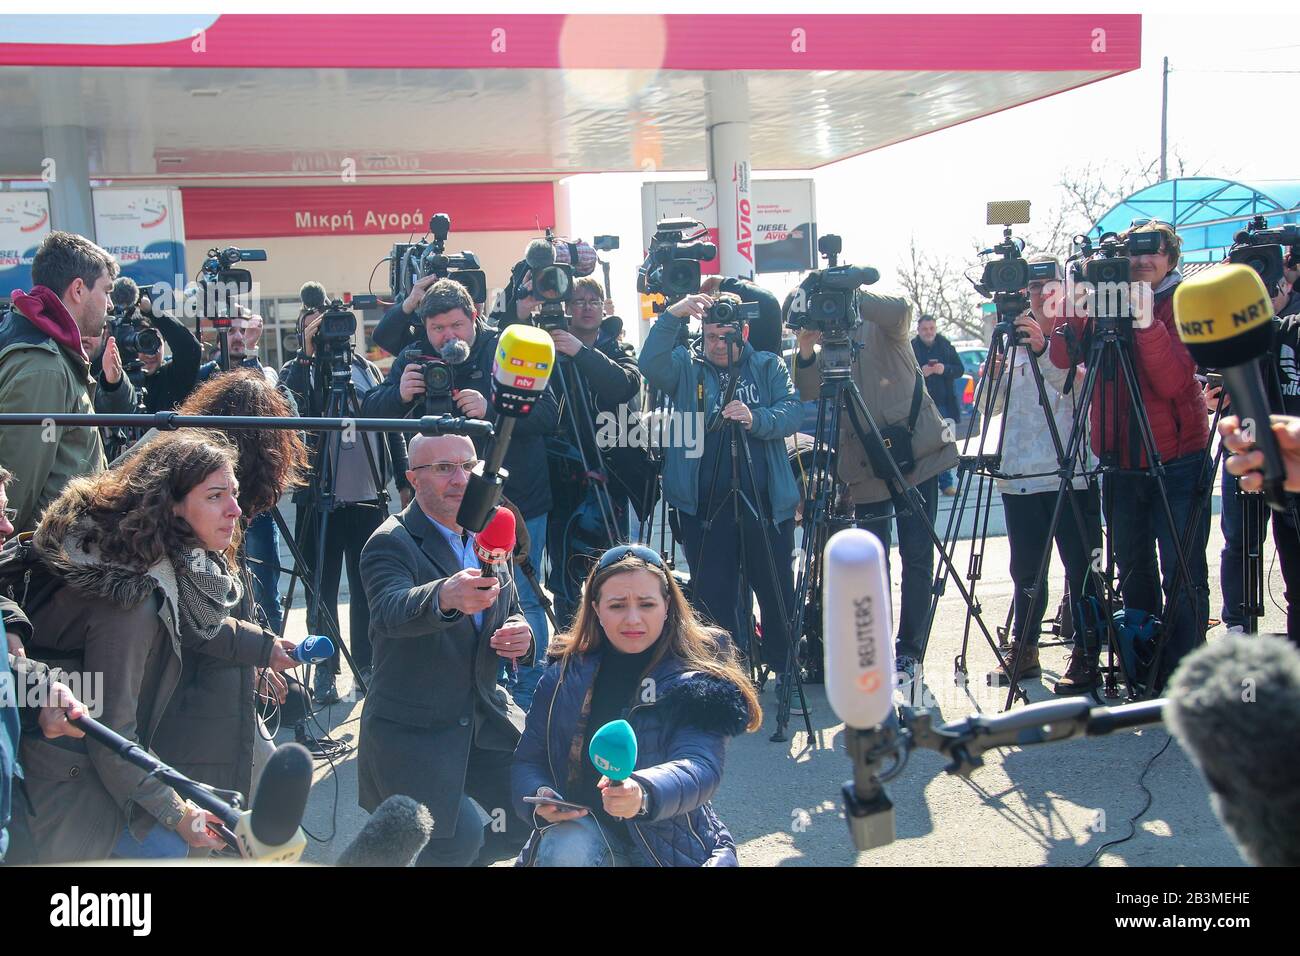 Kastanies, Evros, Grecia - 1 de marzo de 2020: Periodistas, equipos de televisión y fotoperiodismo de todo el mundo se han reunido en el griego-turco Foto de stock